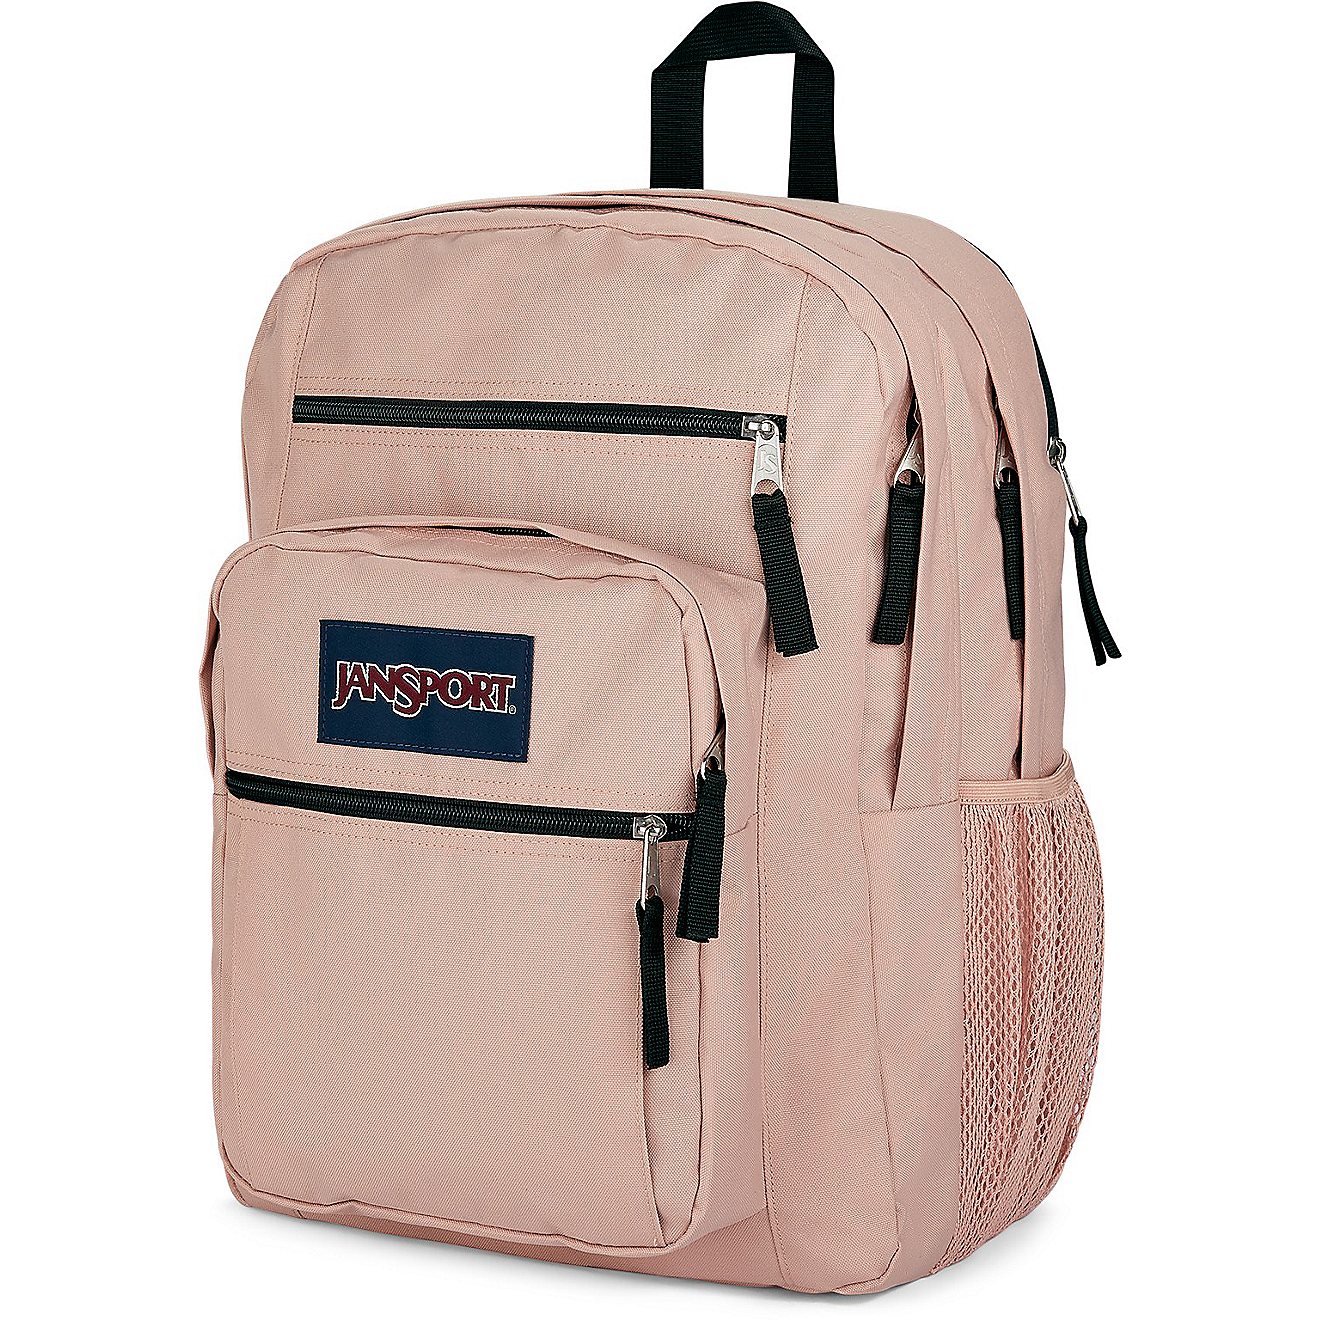 JanSport Big Student Backpack 